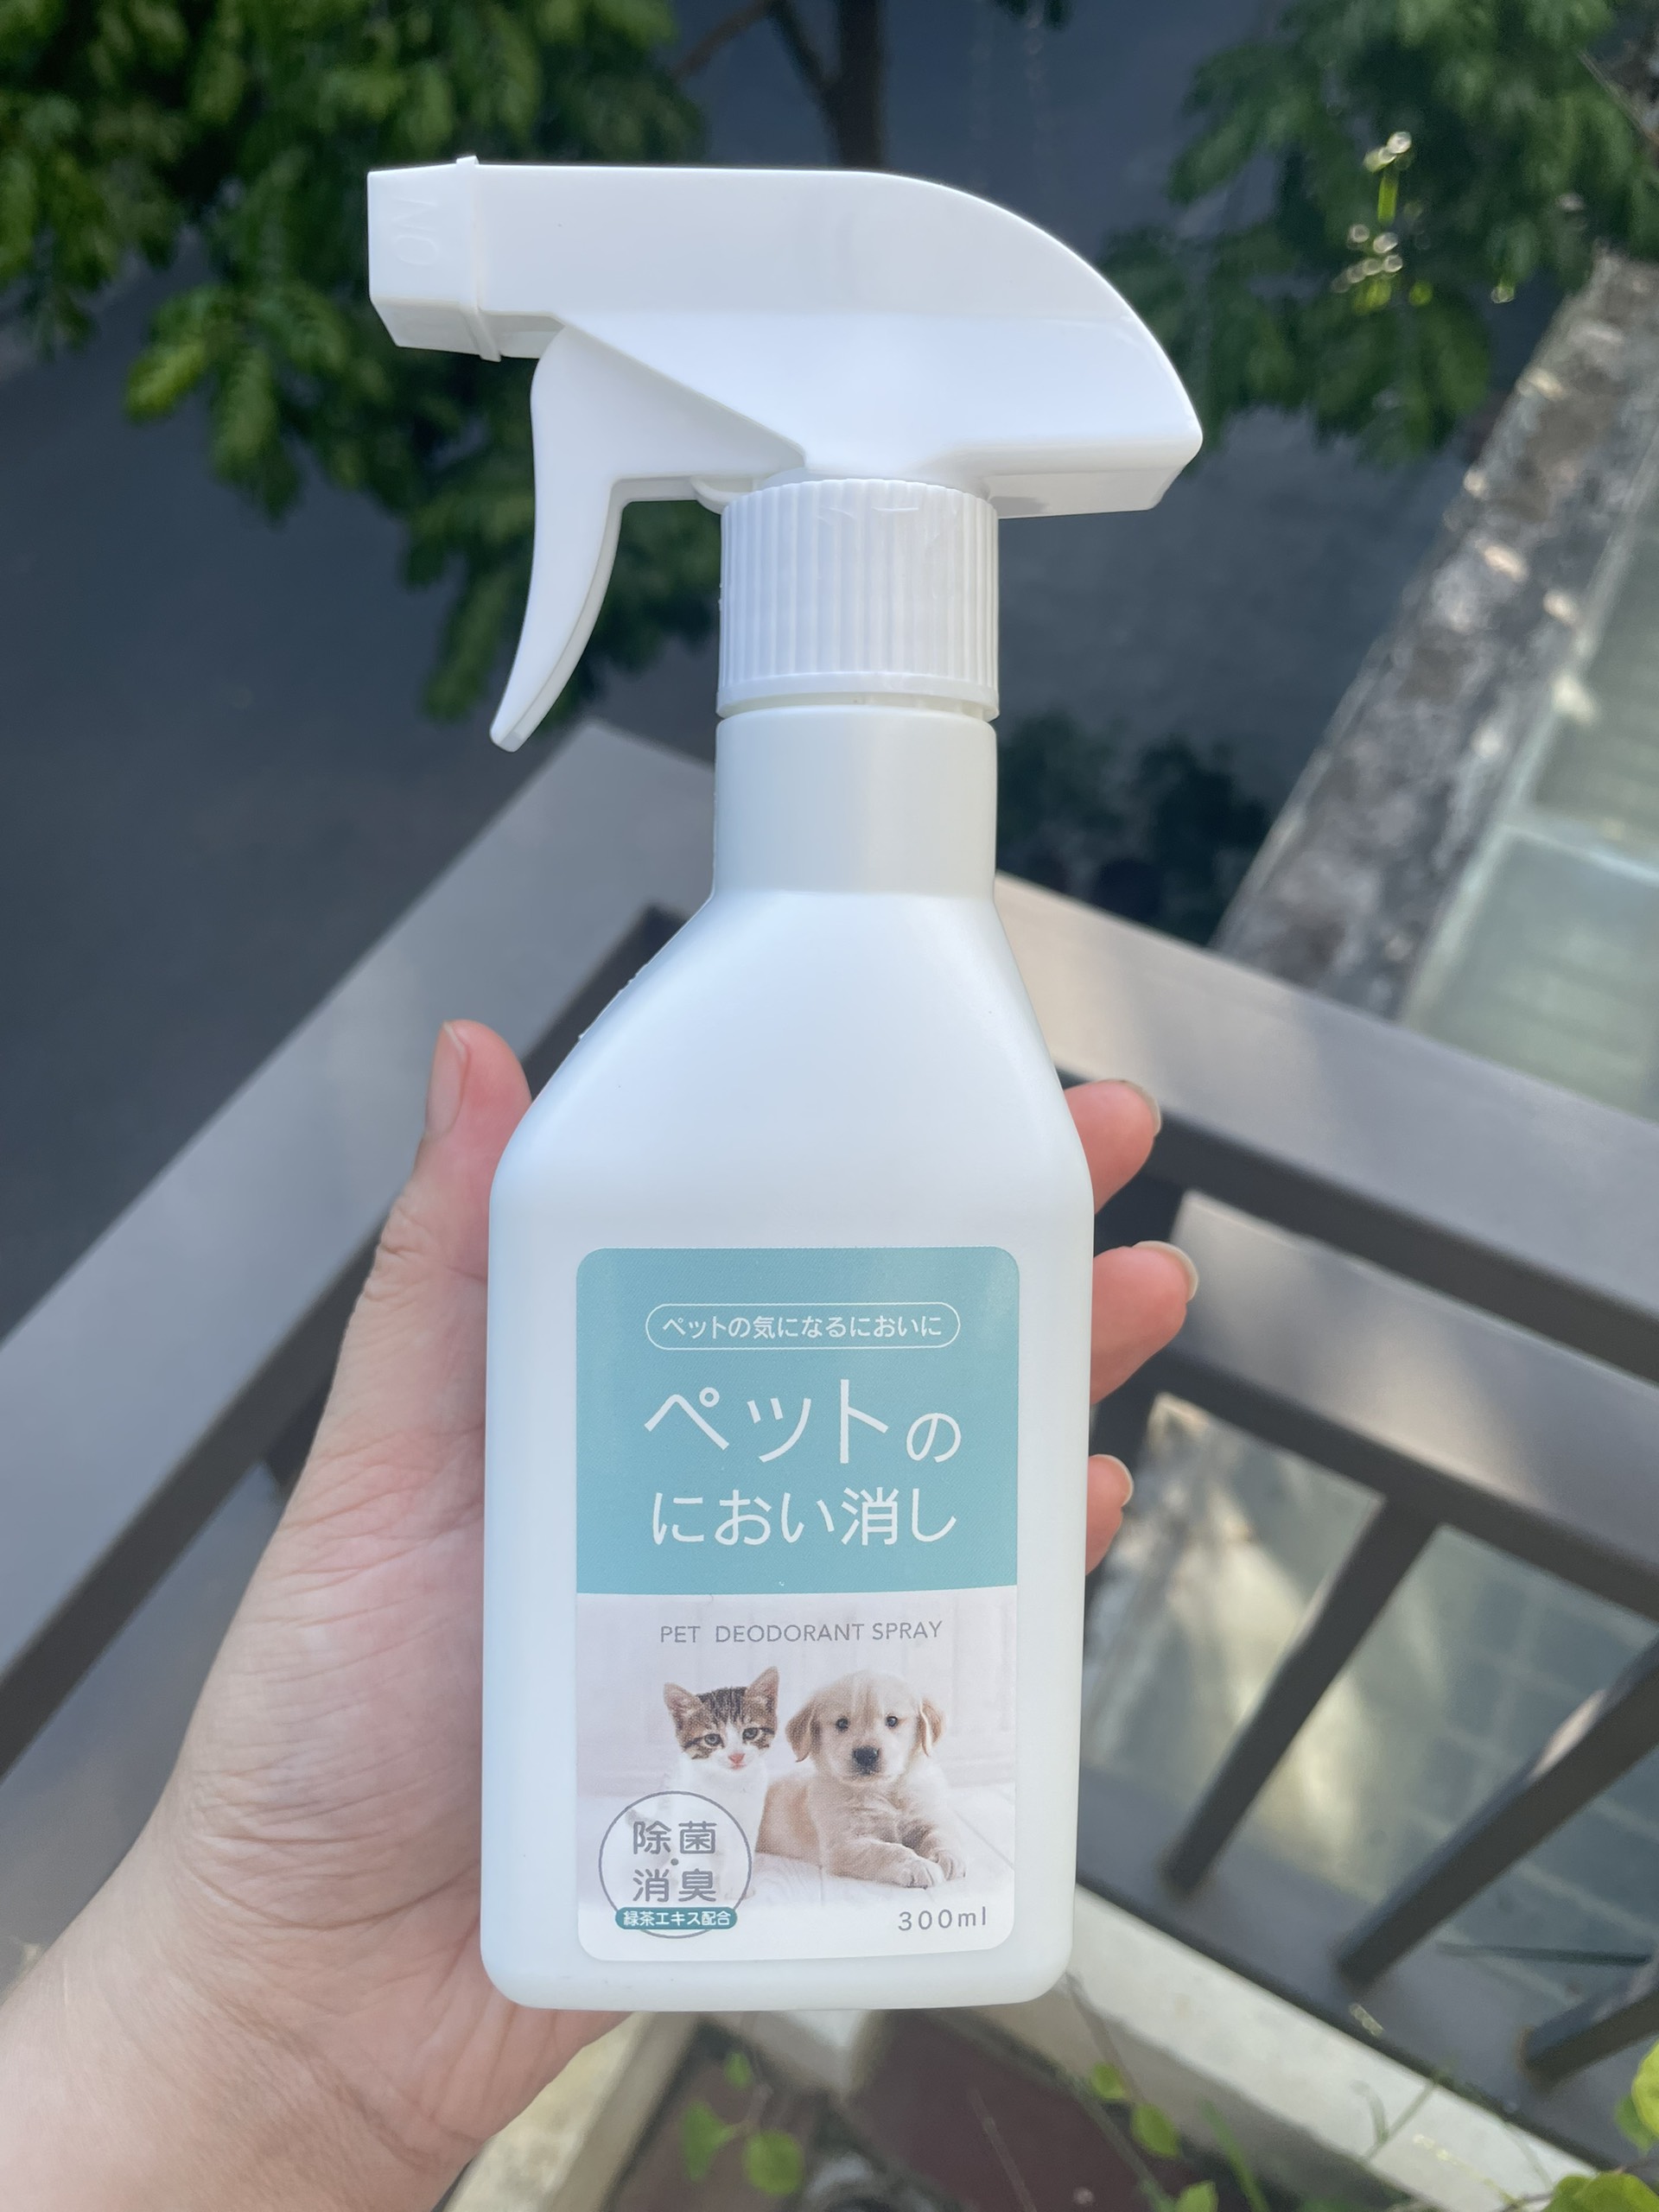 Xịt khử mùi chó mèo 300ml - Hàng Nhật nội địa